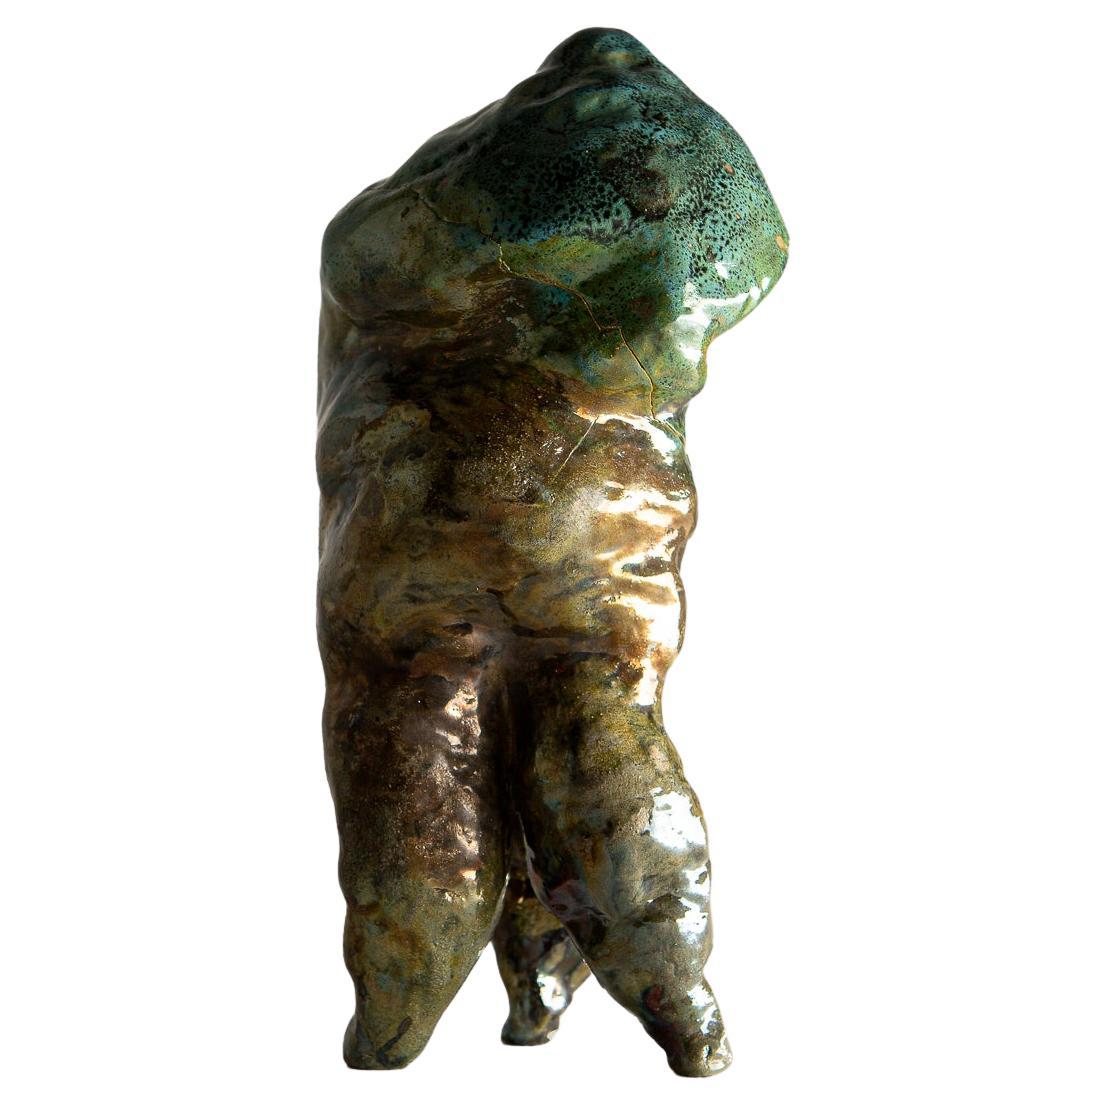 Mehrdimensionale, surreale Keramikskulpturen mit anthropomorphen Formen fordern evolutionäre Schöpfungen heraus. Dreibeiner in einer stabilen Position der Apathie, der Unbeweglichkeit, der gespreizten Beine oder vielleicht bereit zum Start? Sie